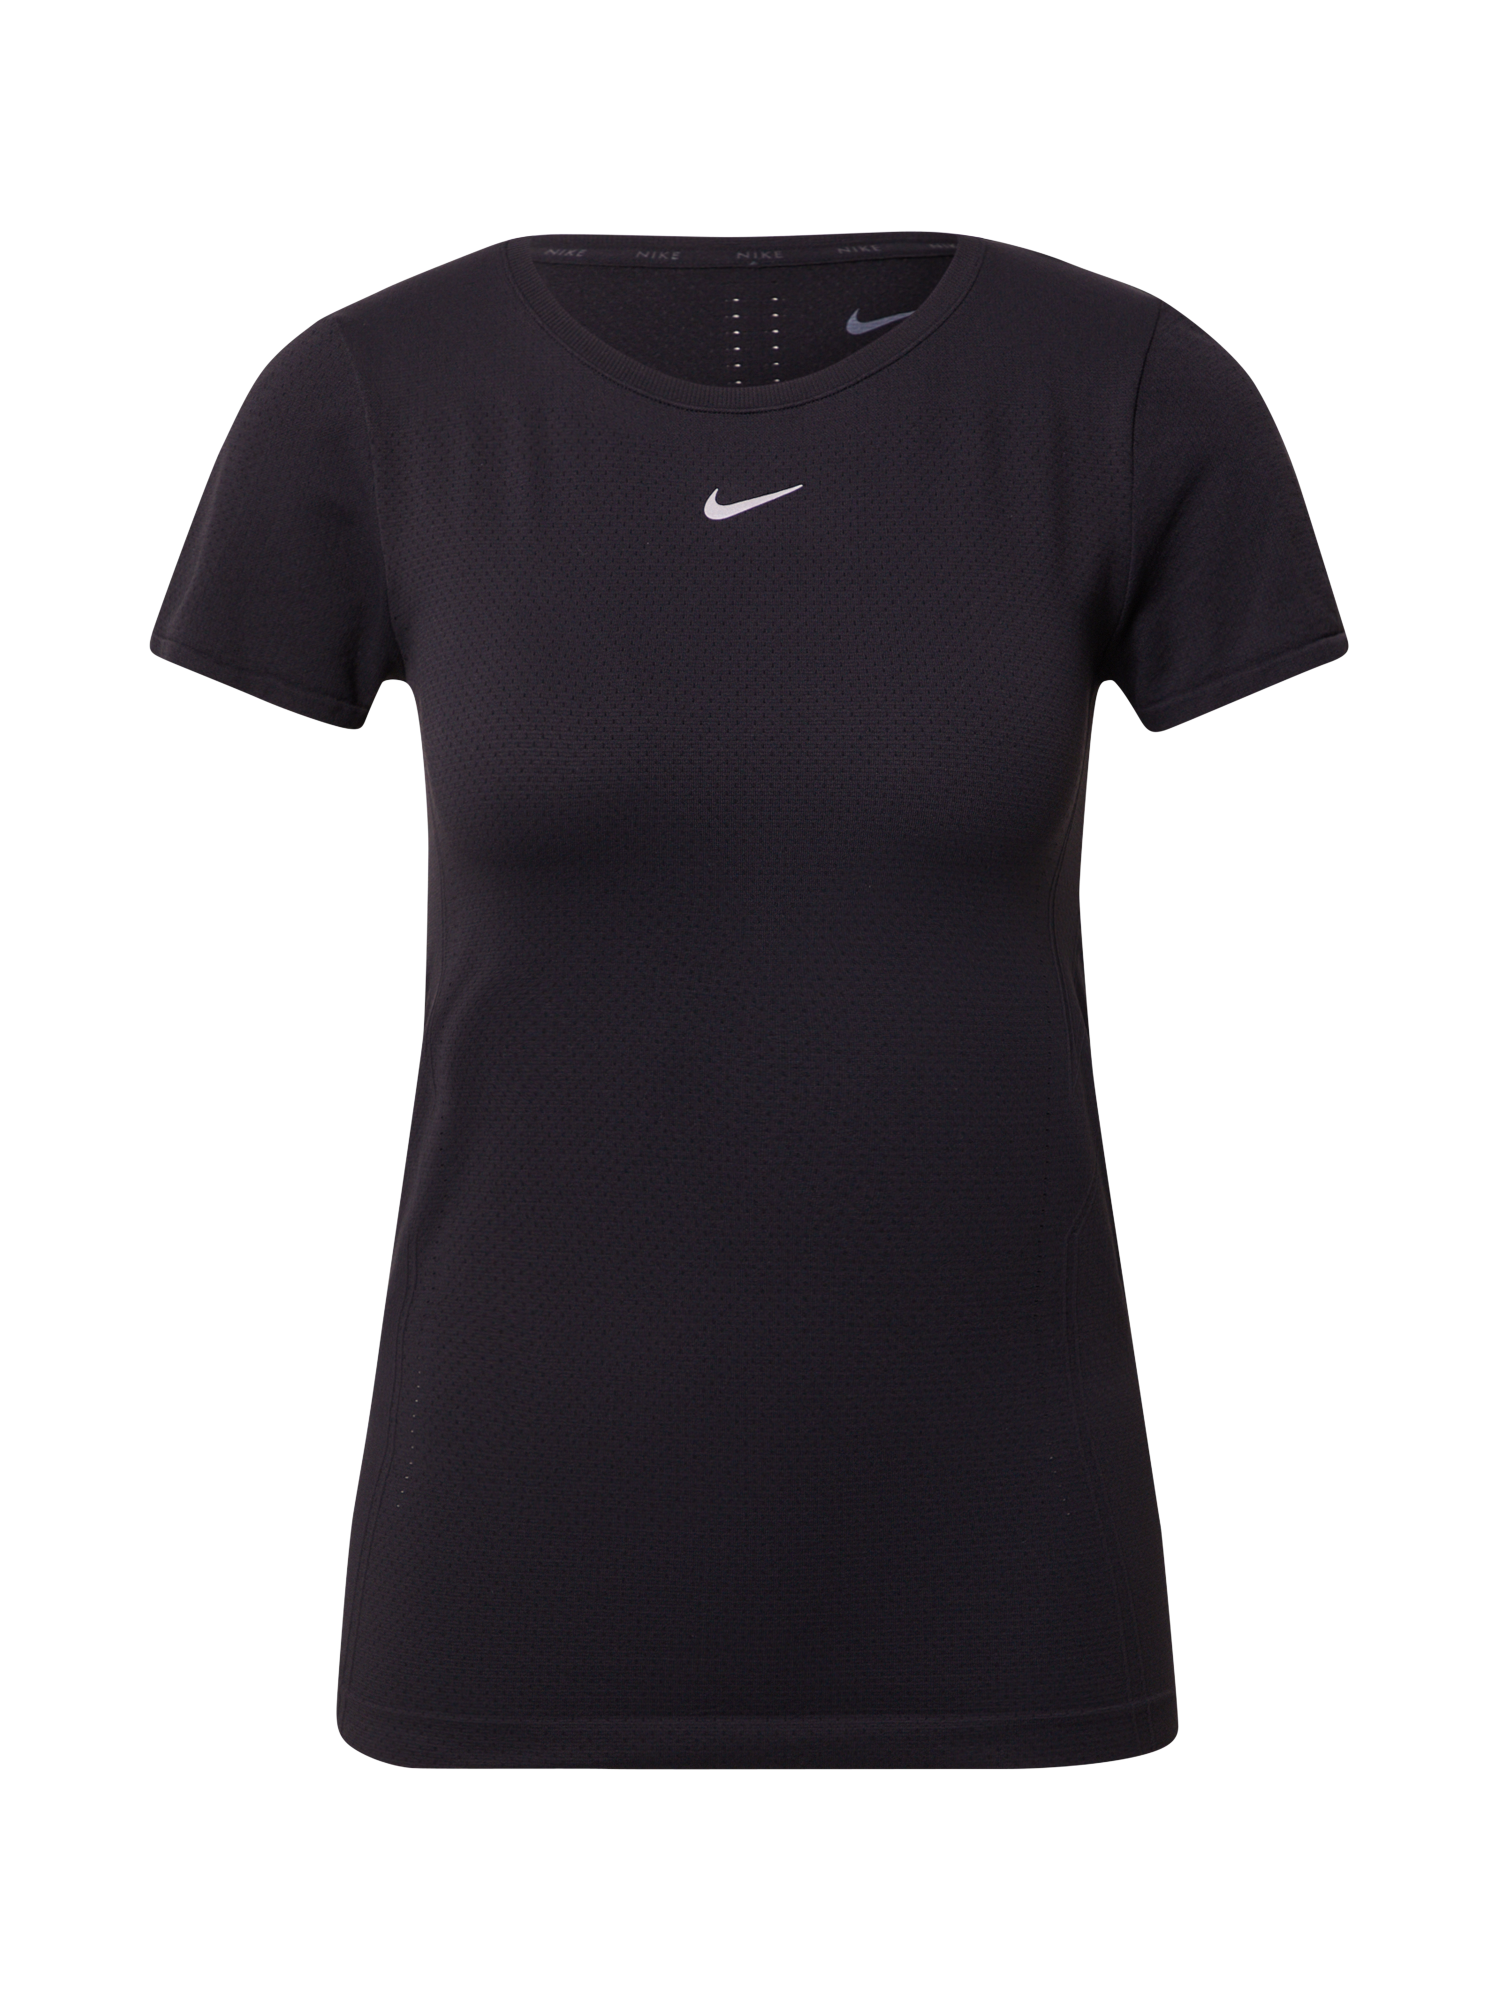 Odzież Dziedziny sportowe NIKE Koszulka funkcyjna AURA w kolorze Czarnym 